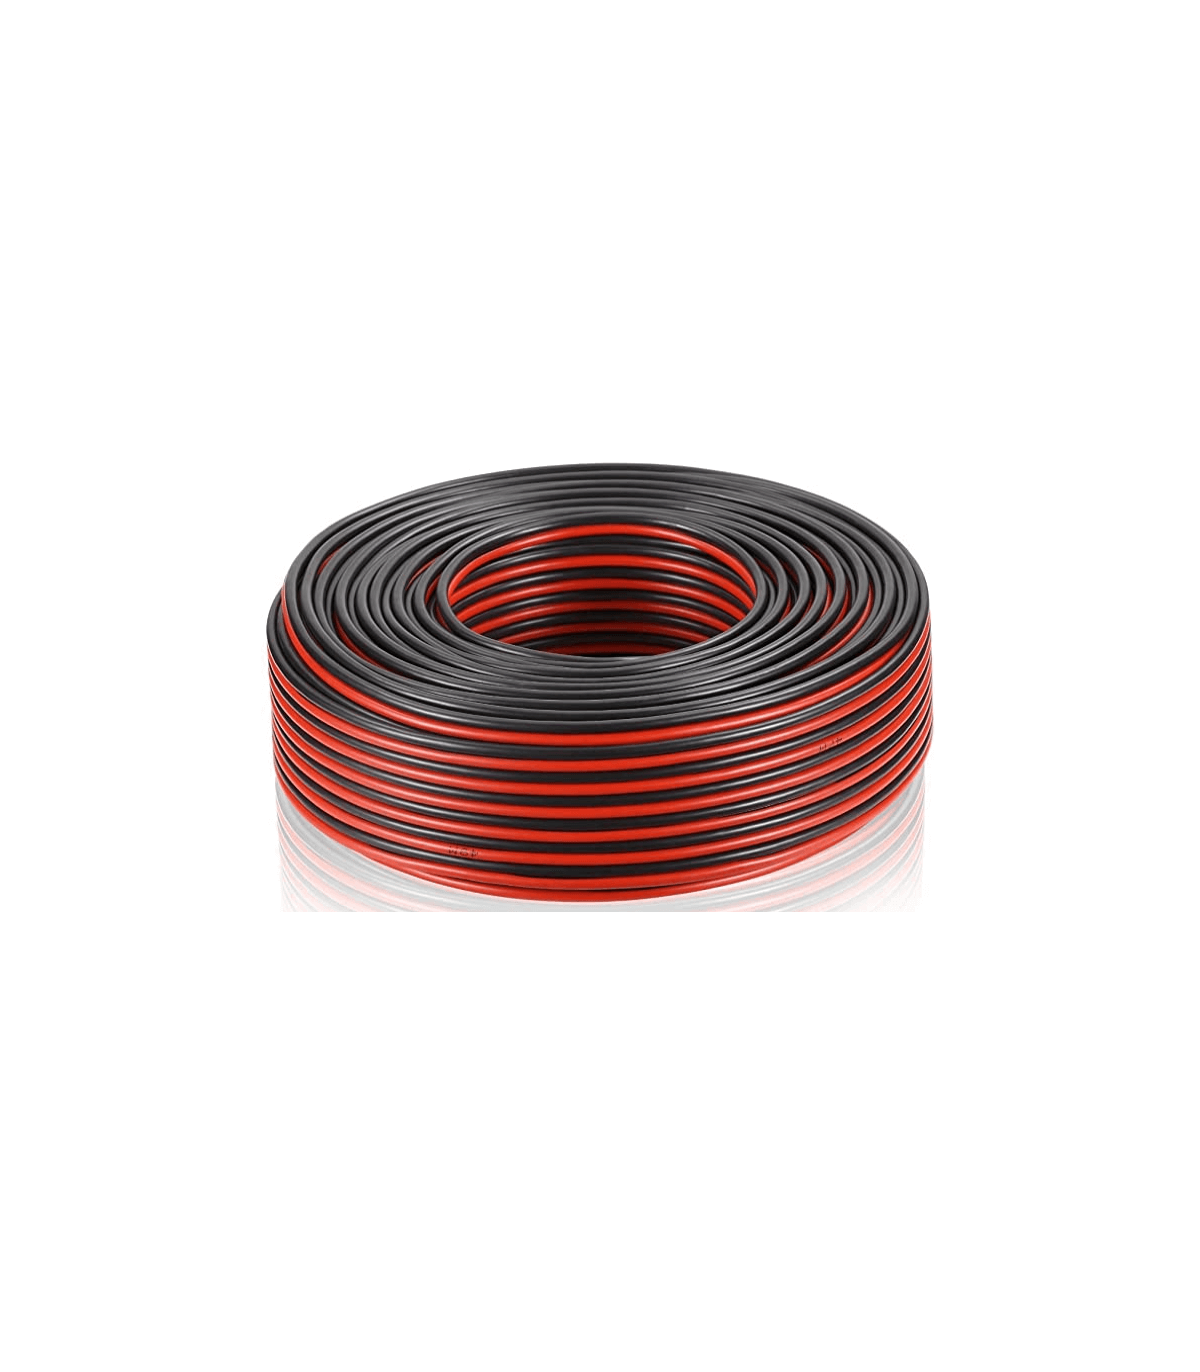 Câble enceinte hifi 2x0.75mm², 25m, noir et rouge, LEXMAN